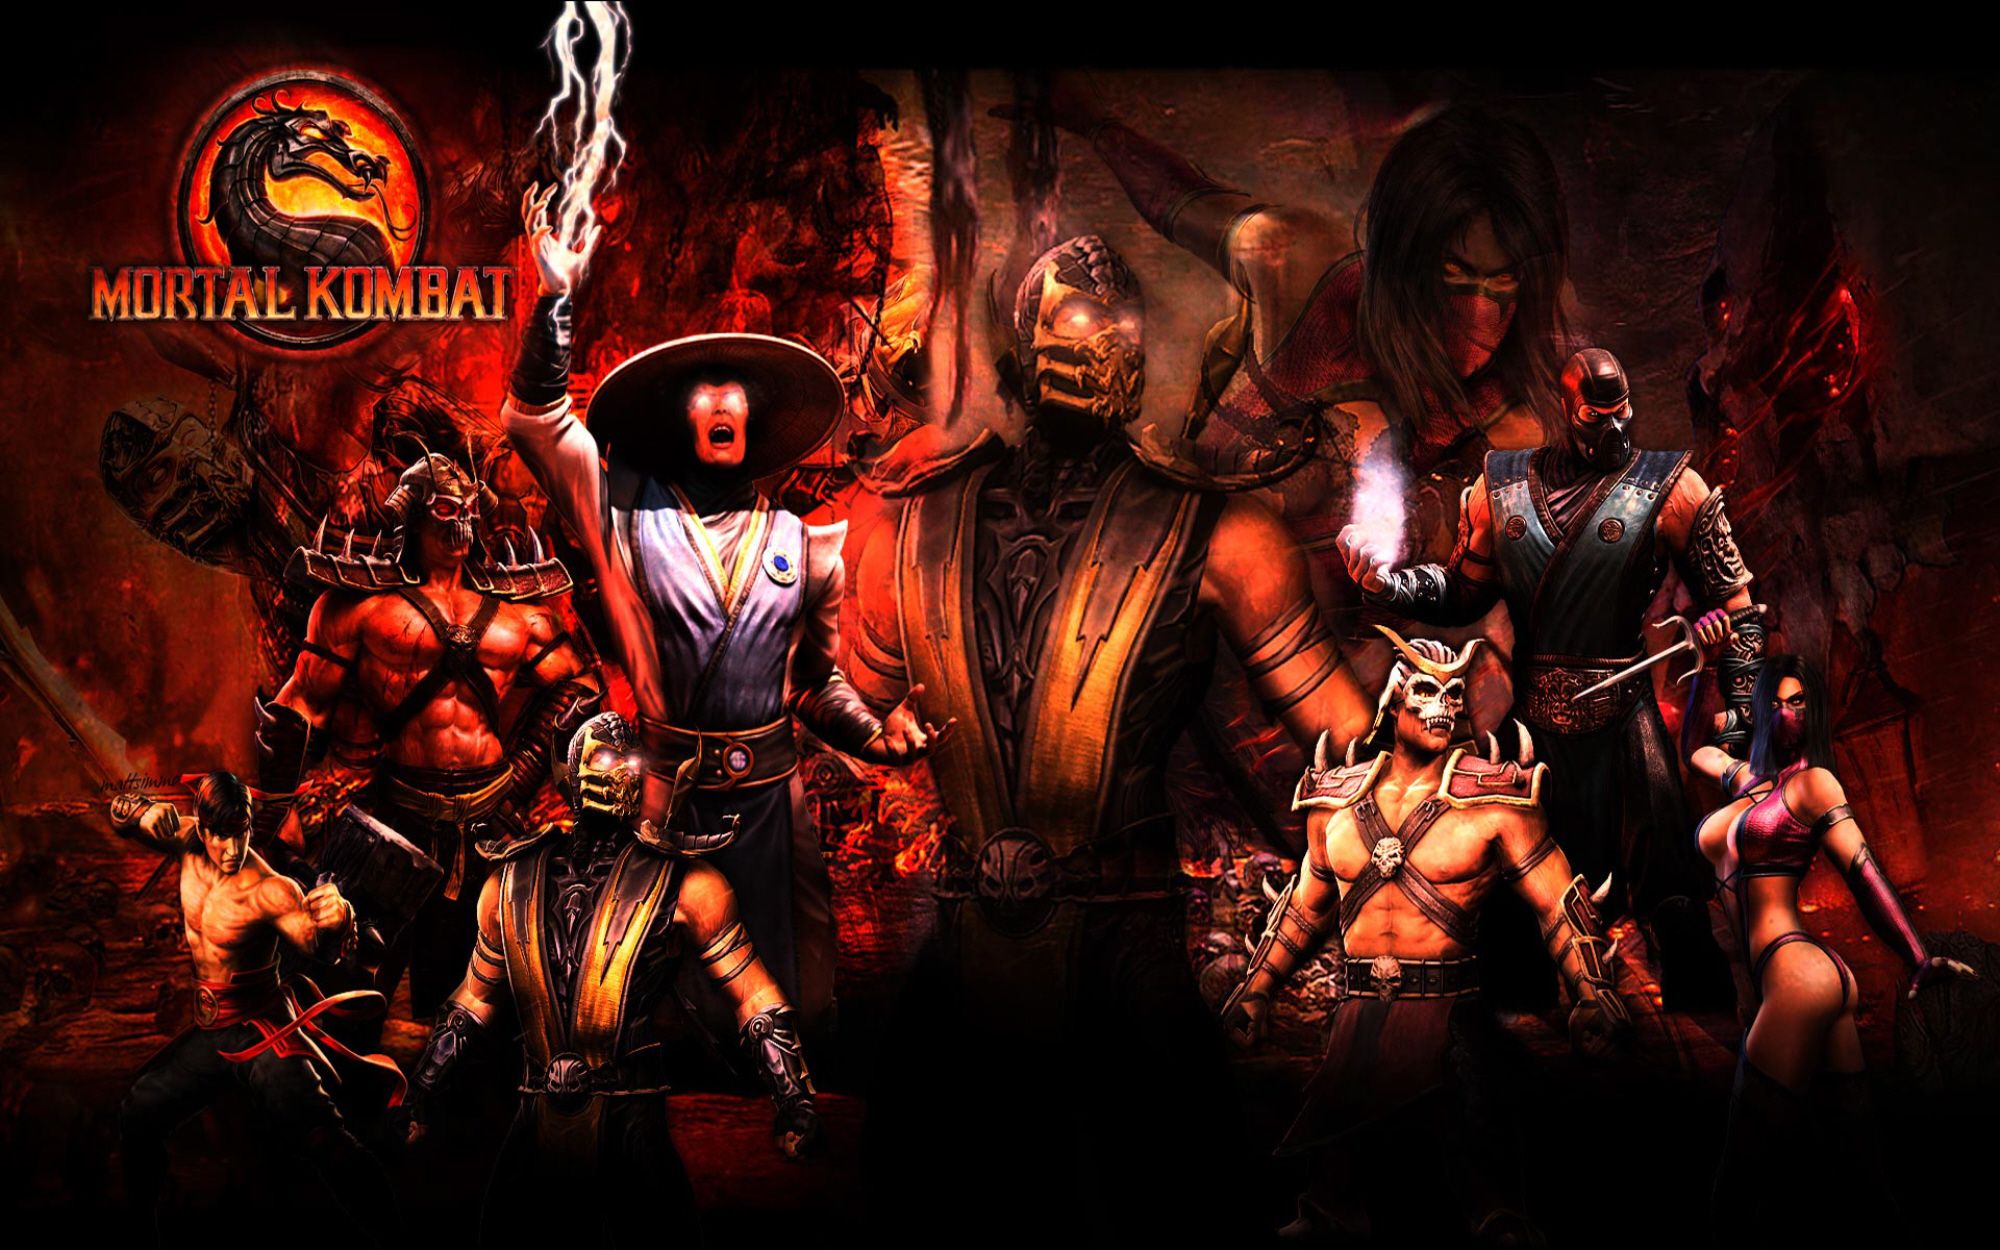 MK Wallpaper. Mortal kombat, Mortal combat, Mortal kombat x wallpaper